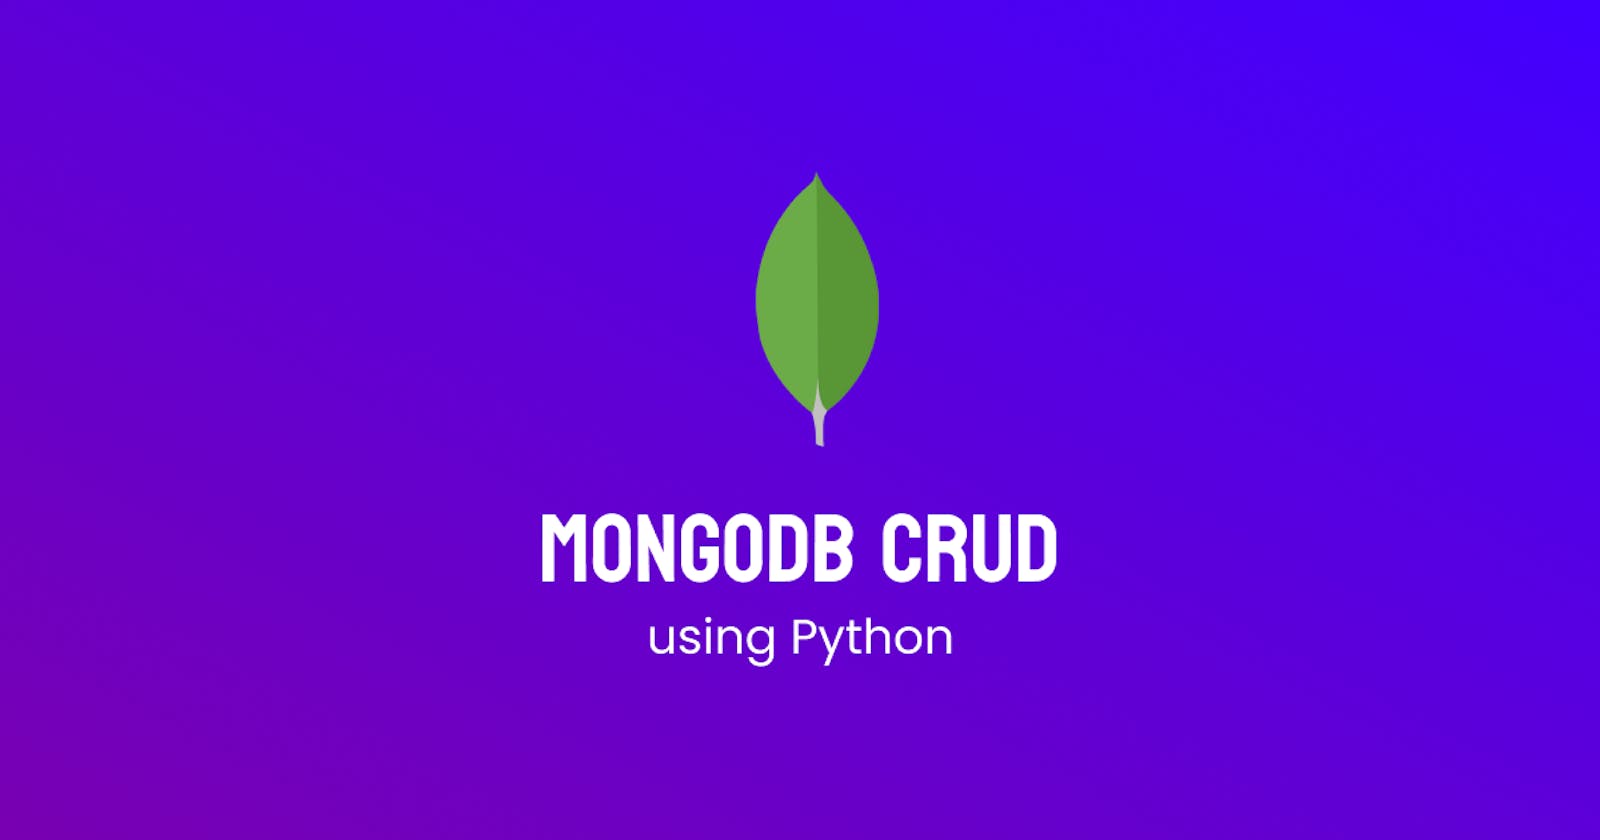 CRUD application with MongoDB and Python